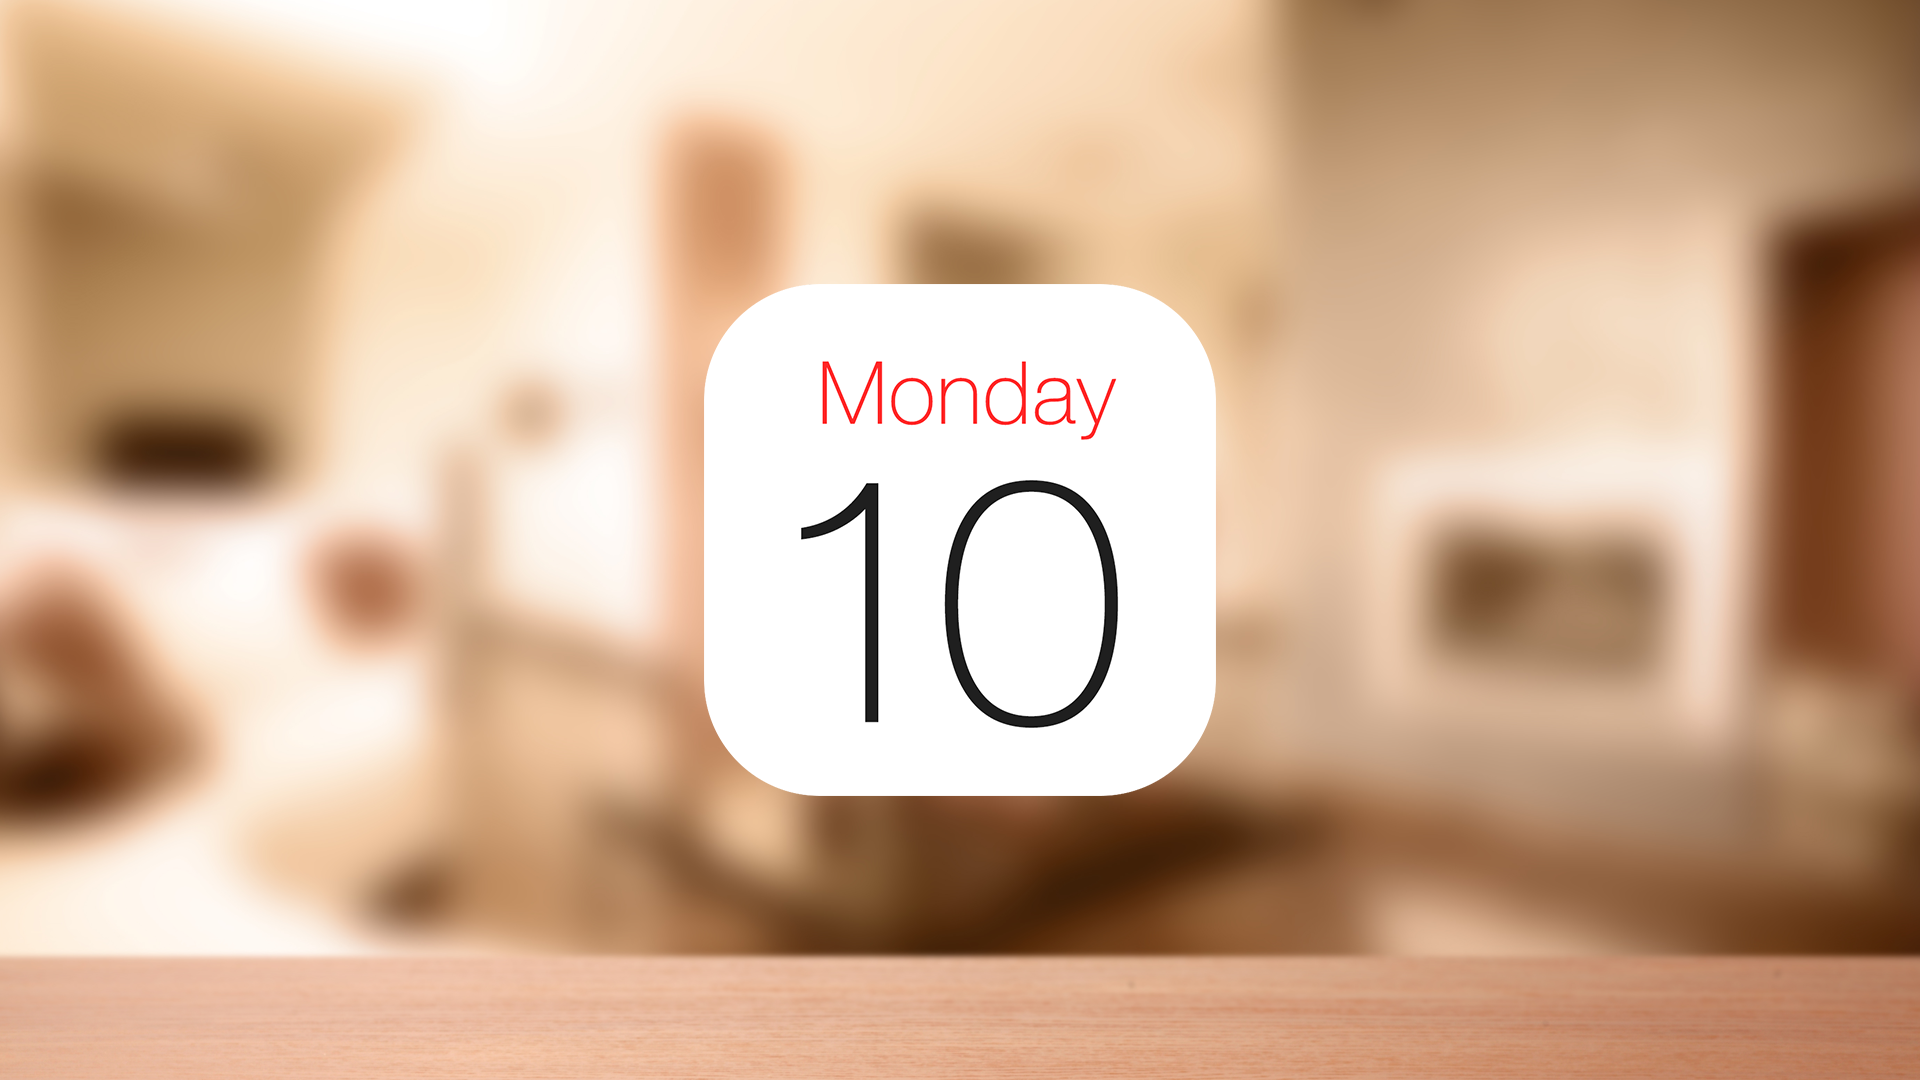 Iphoneの標準カレンダーに大安 仏滅など 六曜を表示させる方法 コトノバ